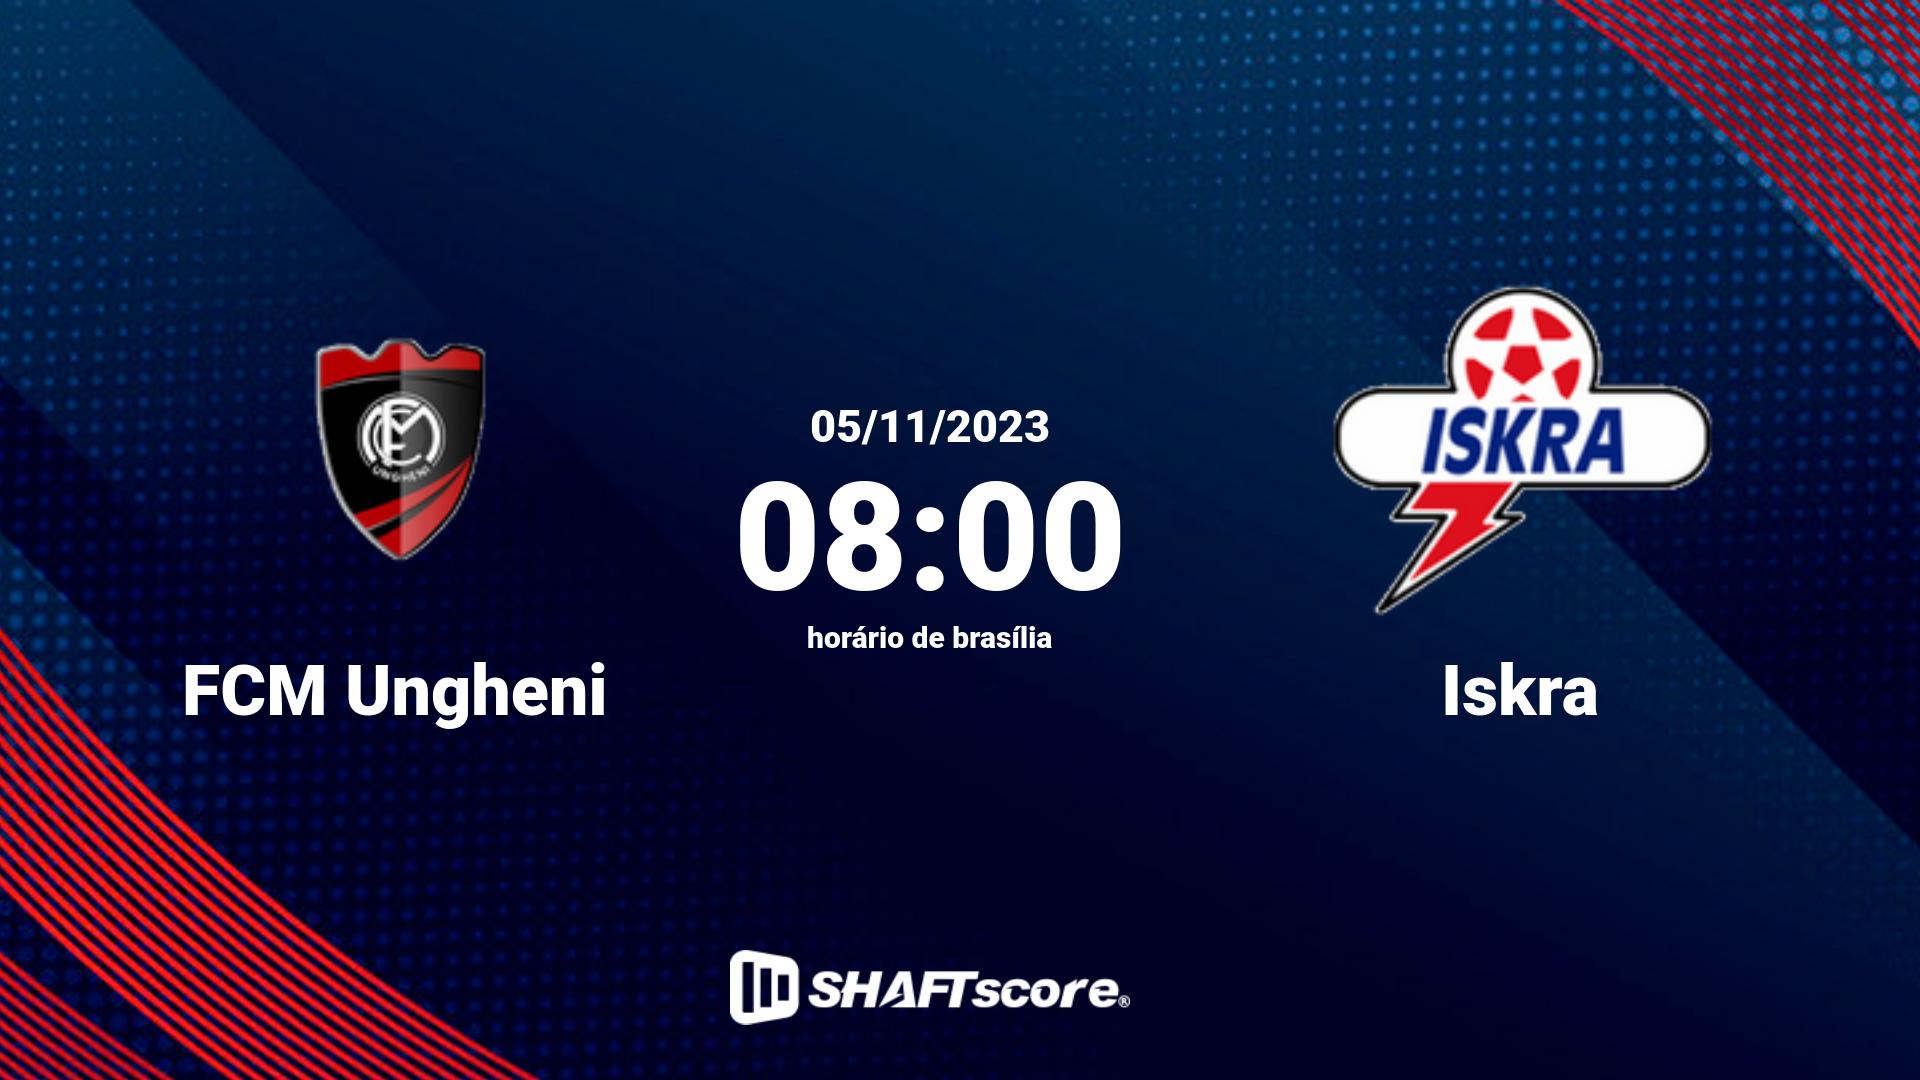 Estatísticas do jogo FCM Ungheni vs Iskra 05.11 08:00